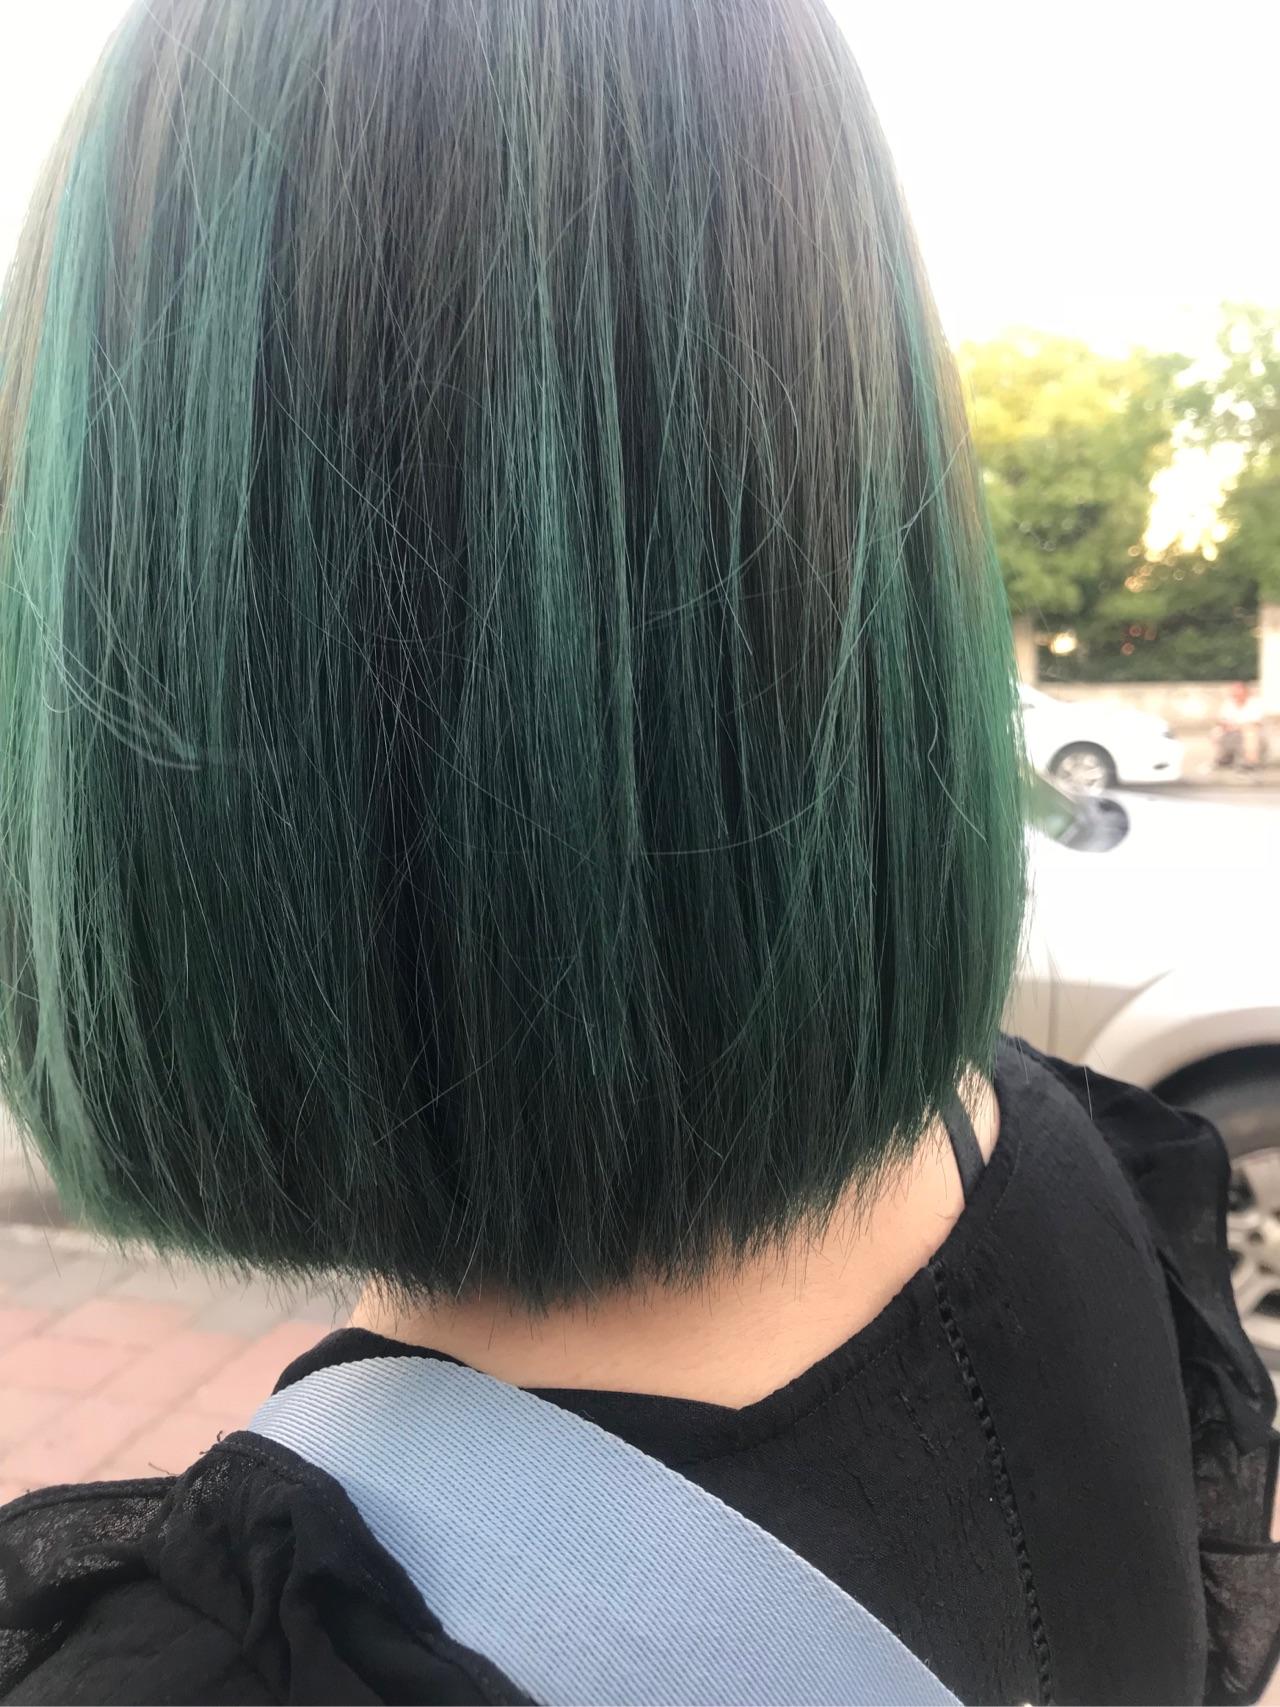 头发染成绿色是怎样一种体验